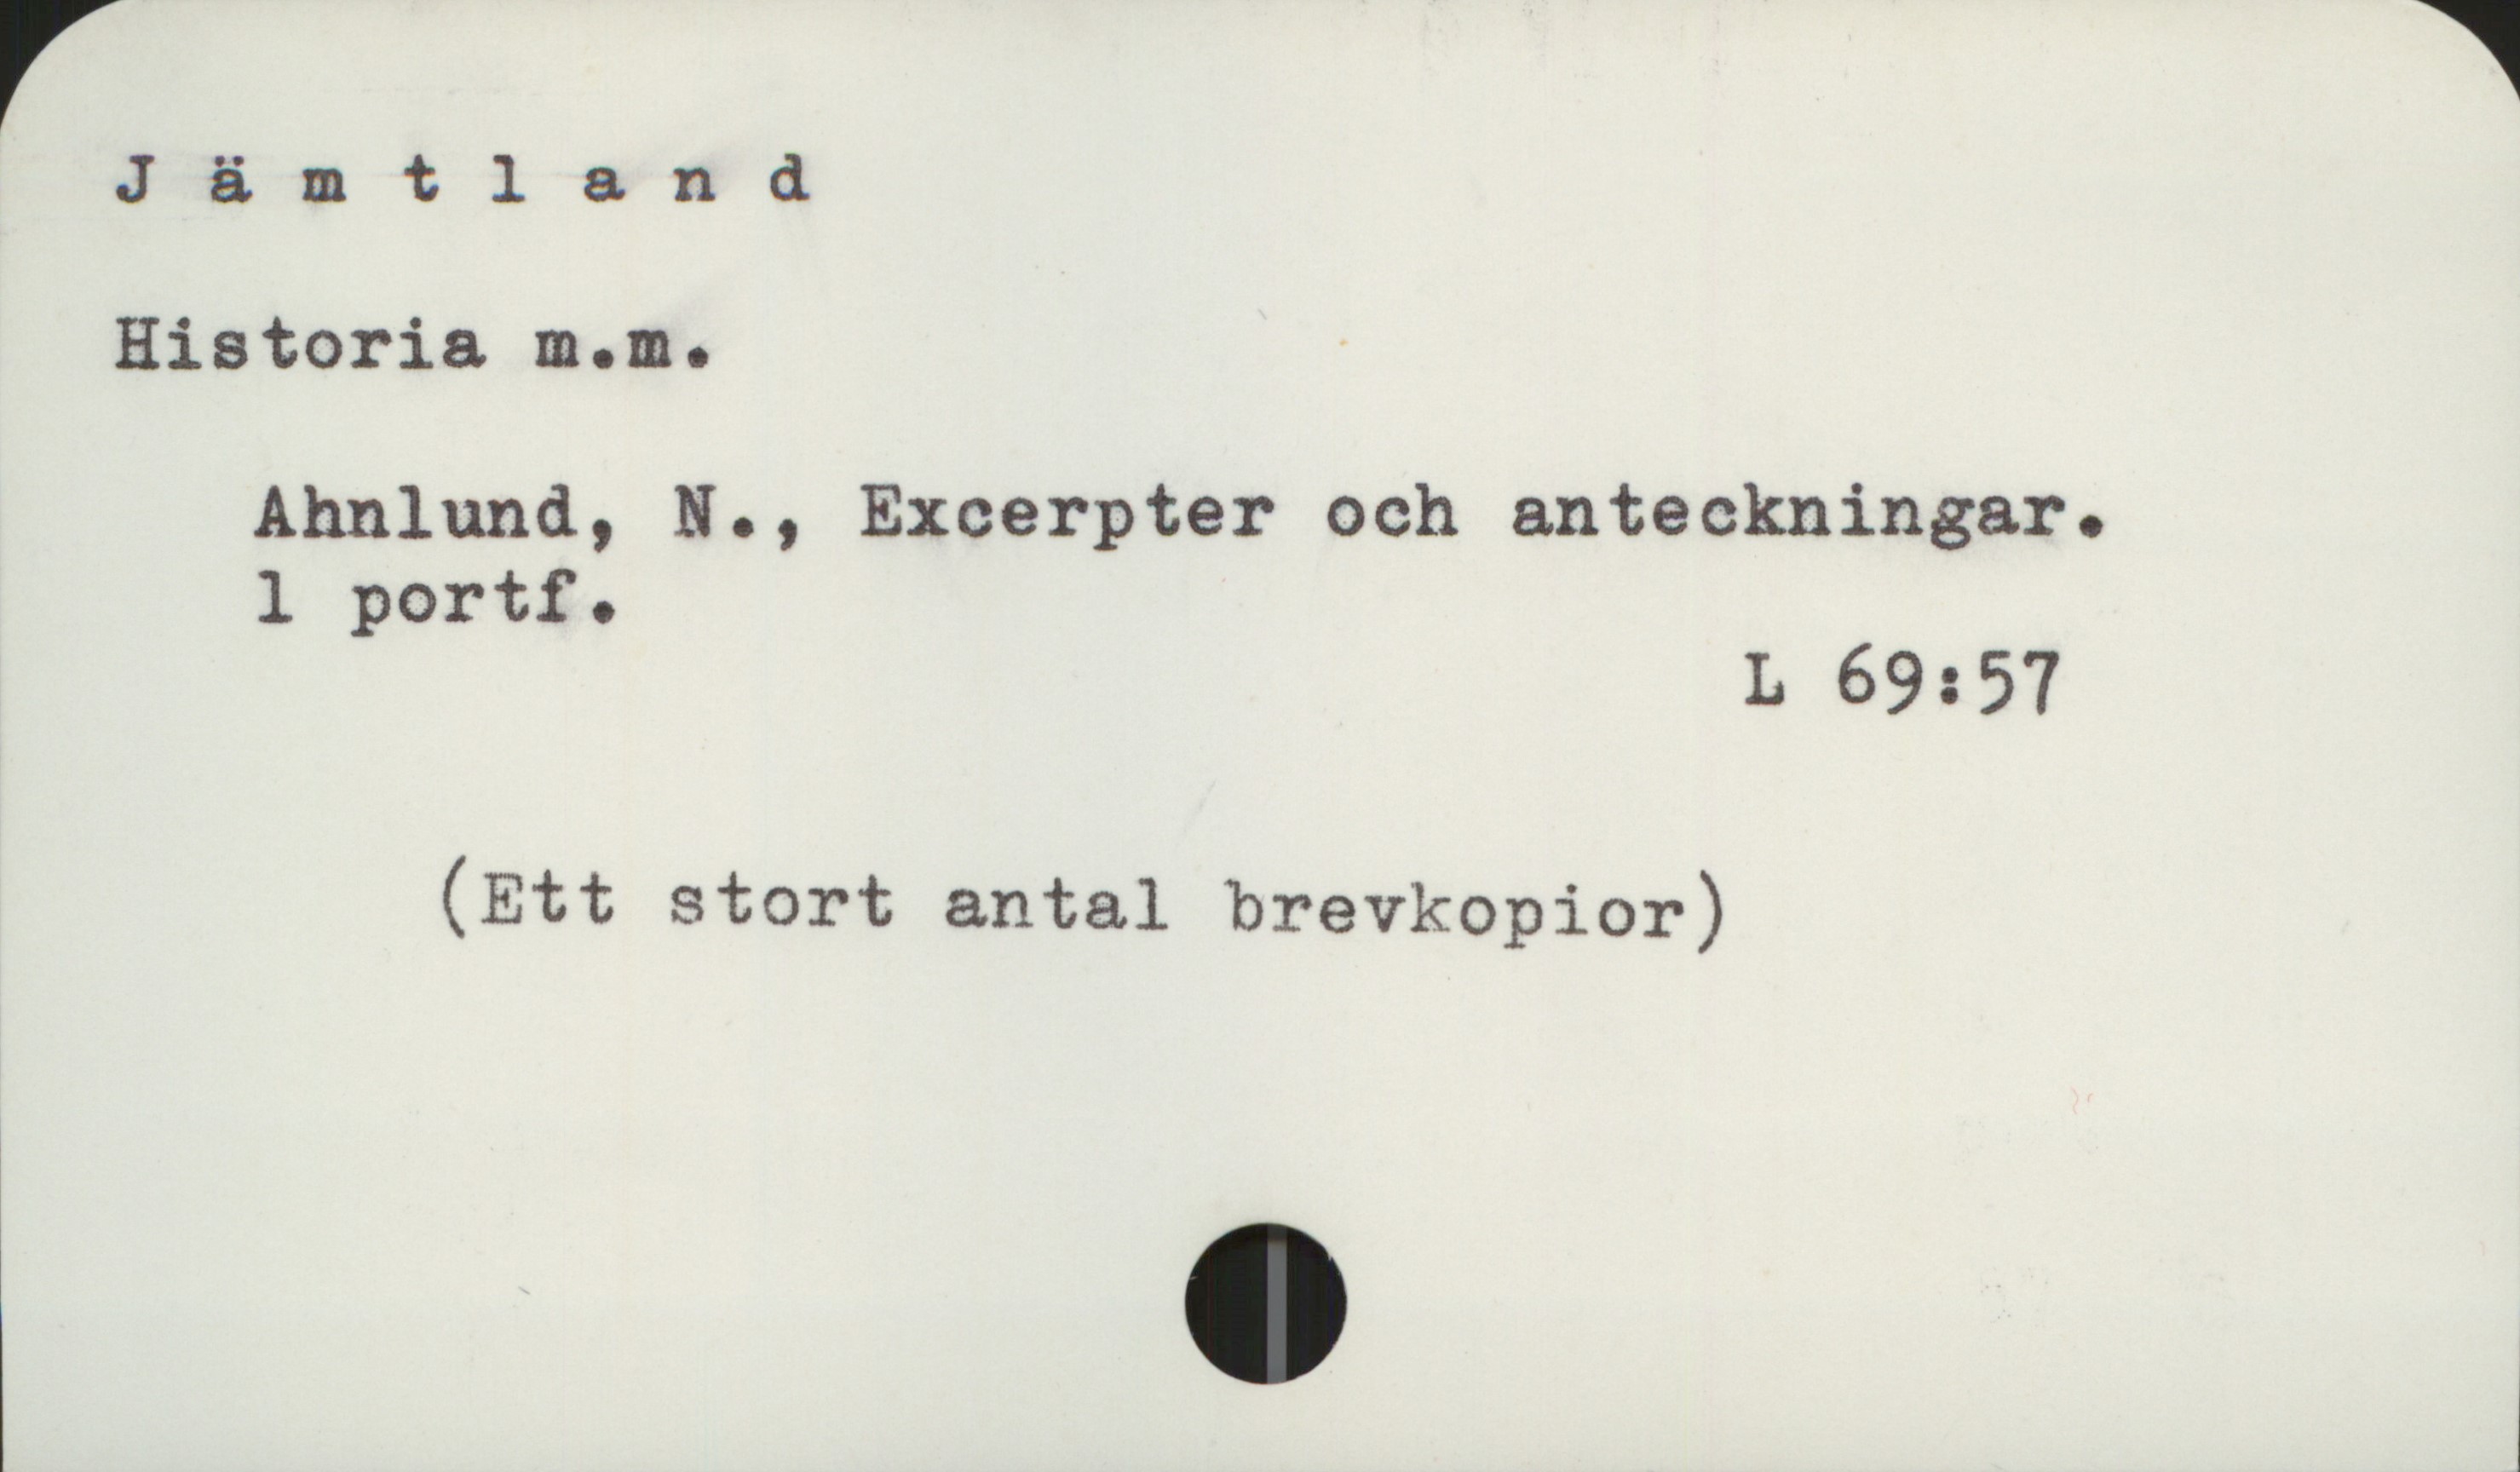 Jämtland Jämtland

Historia m.m.

    Ahnlund, N., Excerpter och anteckningar
    1 portf.
                                                            L 69:57

    (Ett stort antal brevkopior)